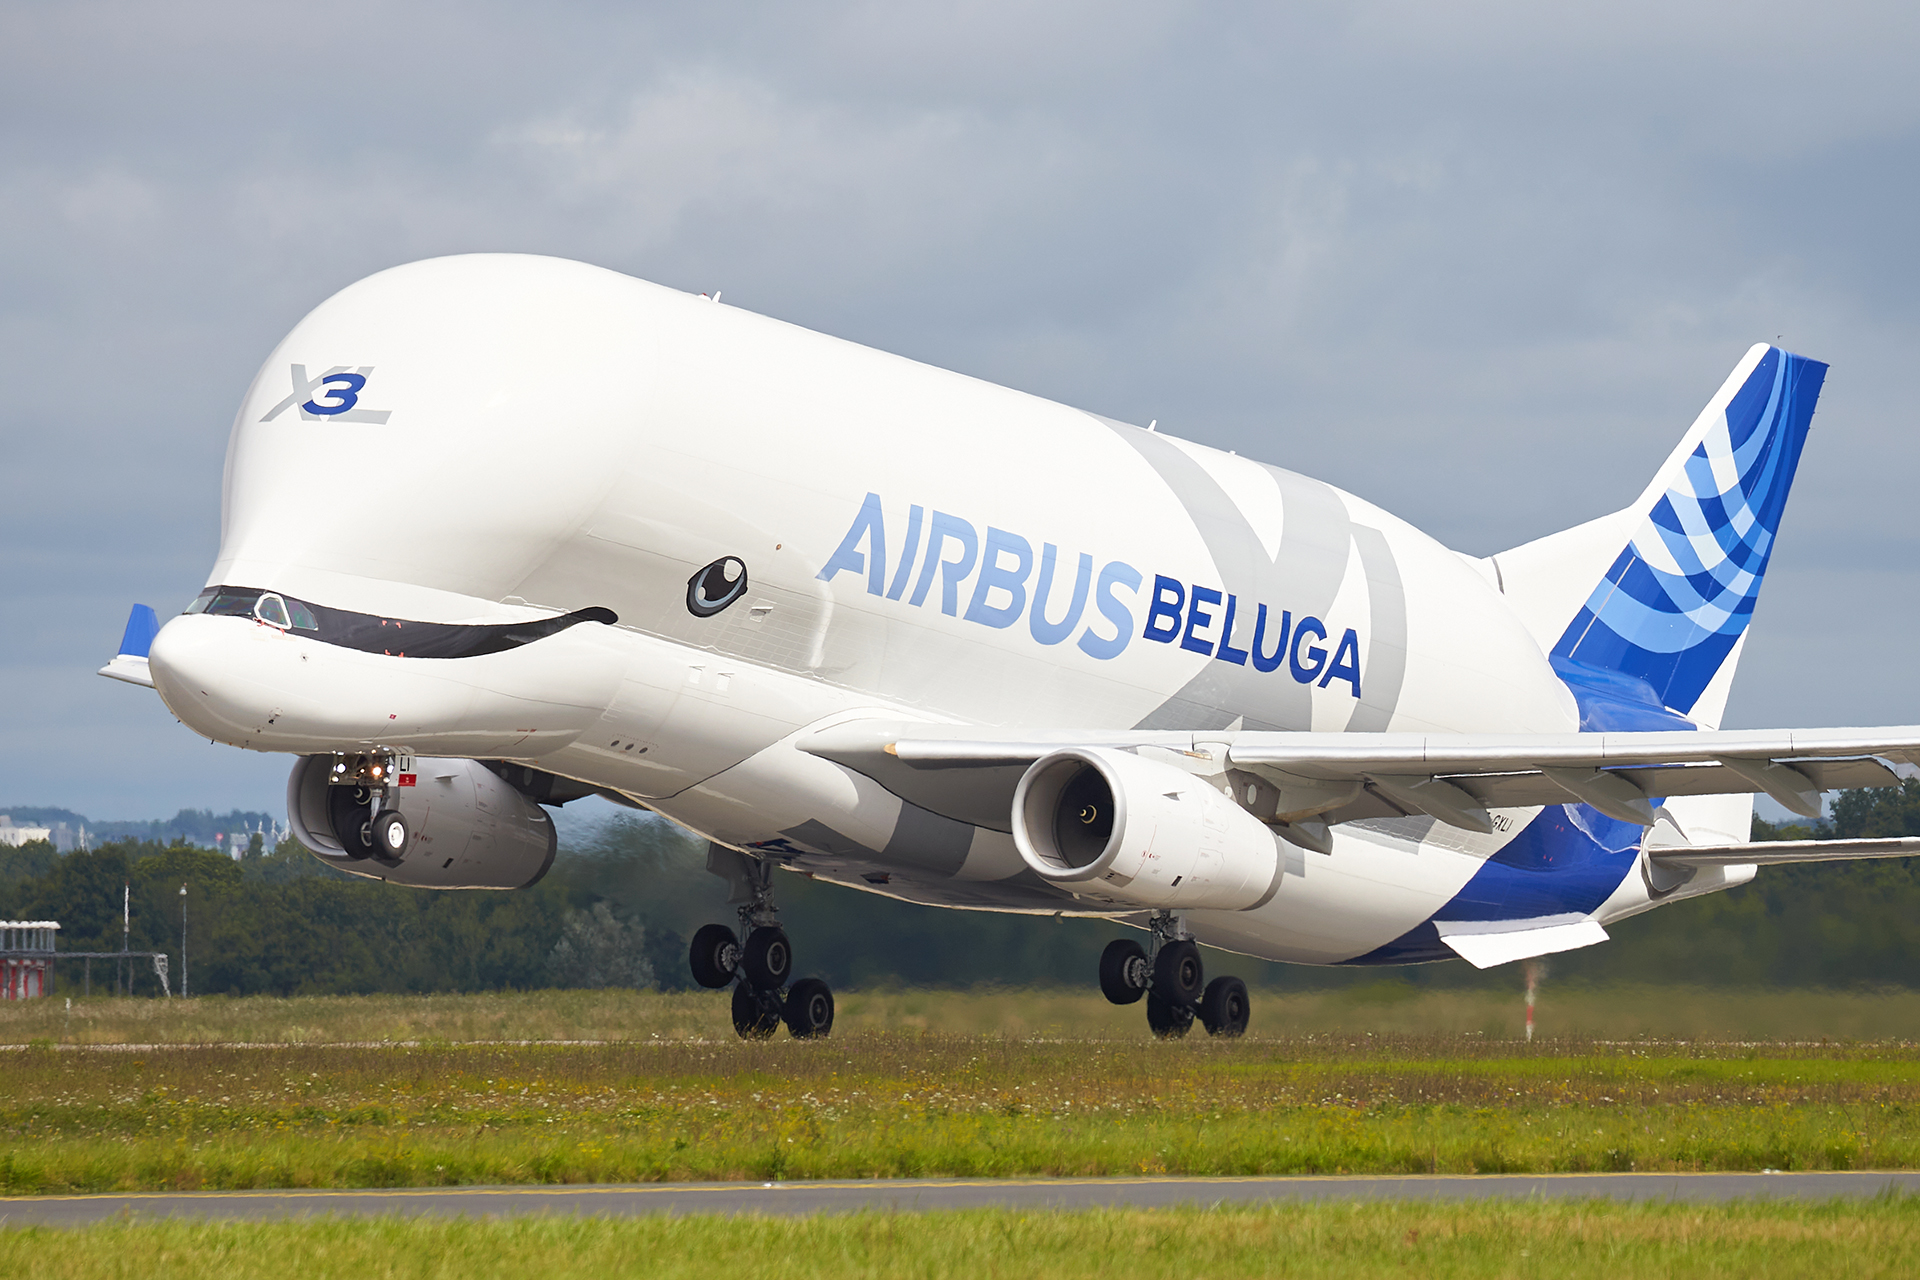 [10/08/2021] Airbus A330-743L (F-GXLI) Airbus Transport International: Beluga "XL" 3 XAVnMb-GRX-6032